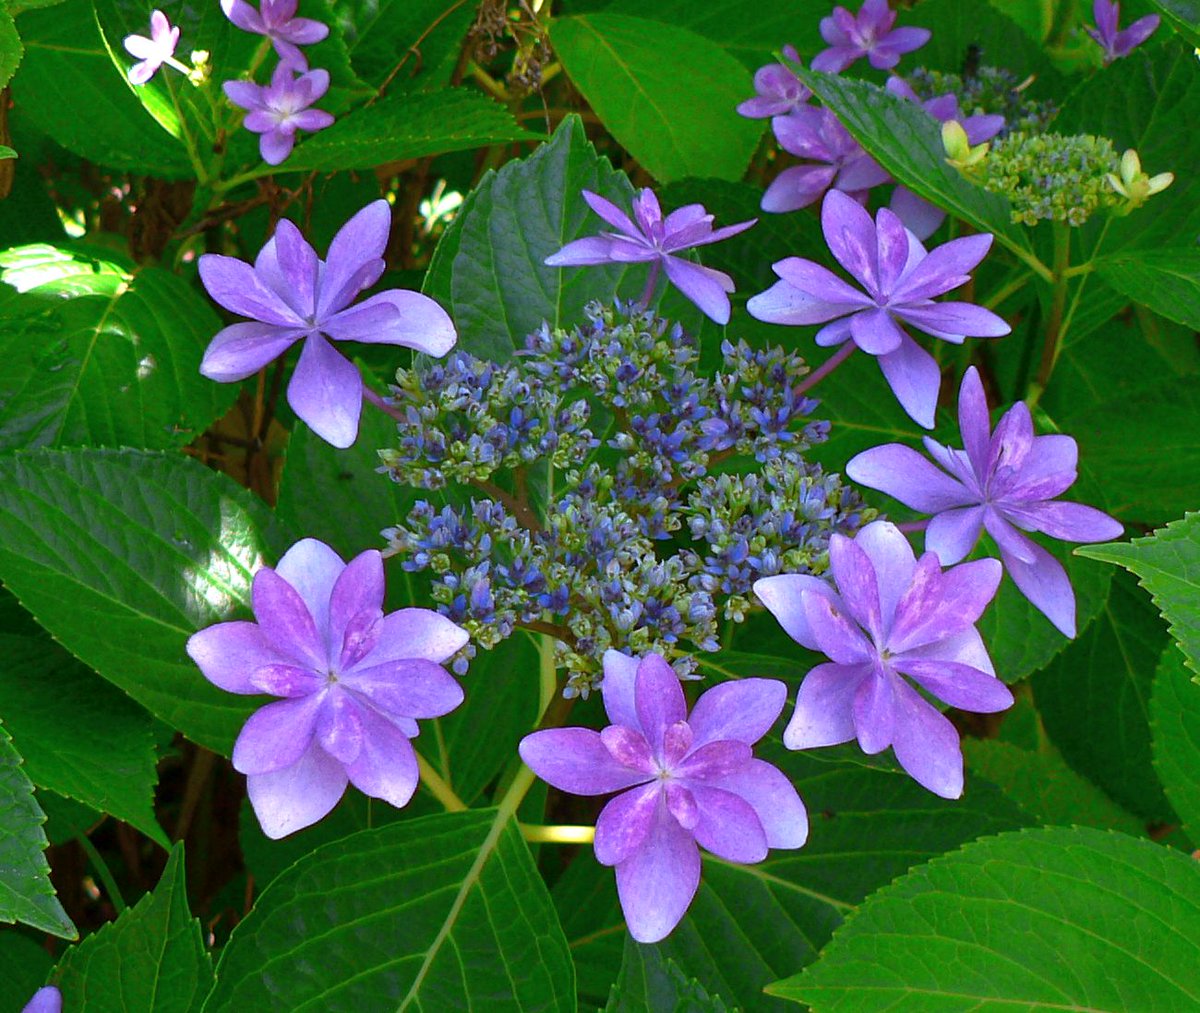 こころんグリーン בטוויטר 近所のお宅の庭に ガクアジサイが咲いていました 紫の大きな額が小さな花の周りに並んでいます ガクアジサイはホン アジサイの原種といわれています ガクアジサイ 紫 額 ホンアジサイ 原種 園芸 ガーデニング 熊本市南区 熊本